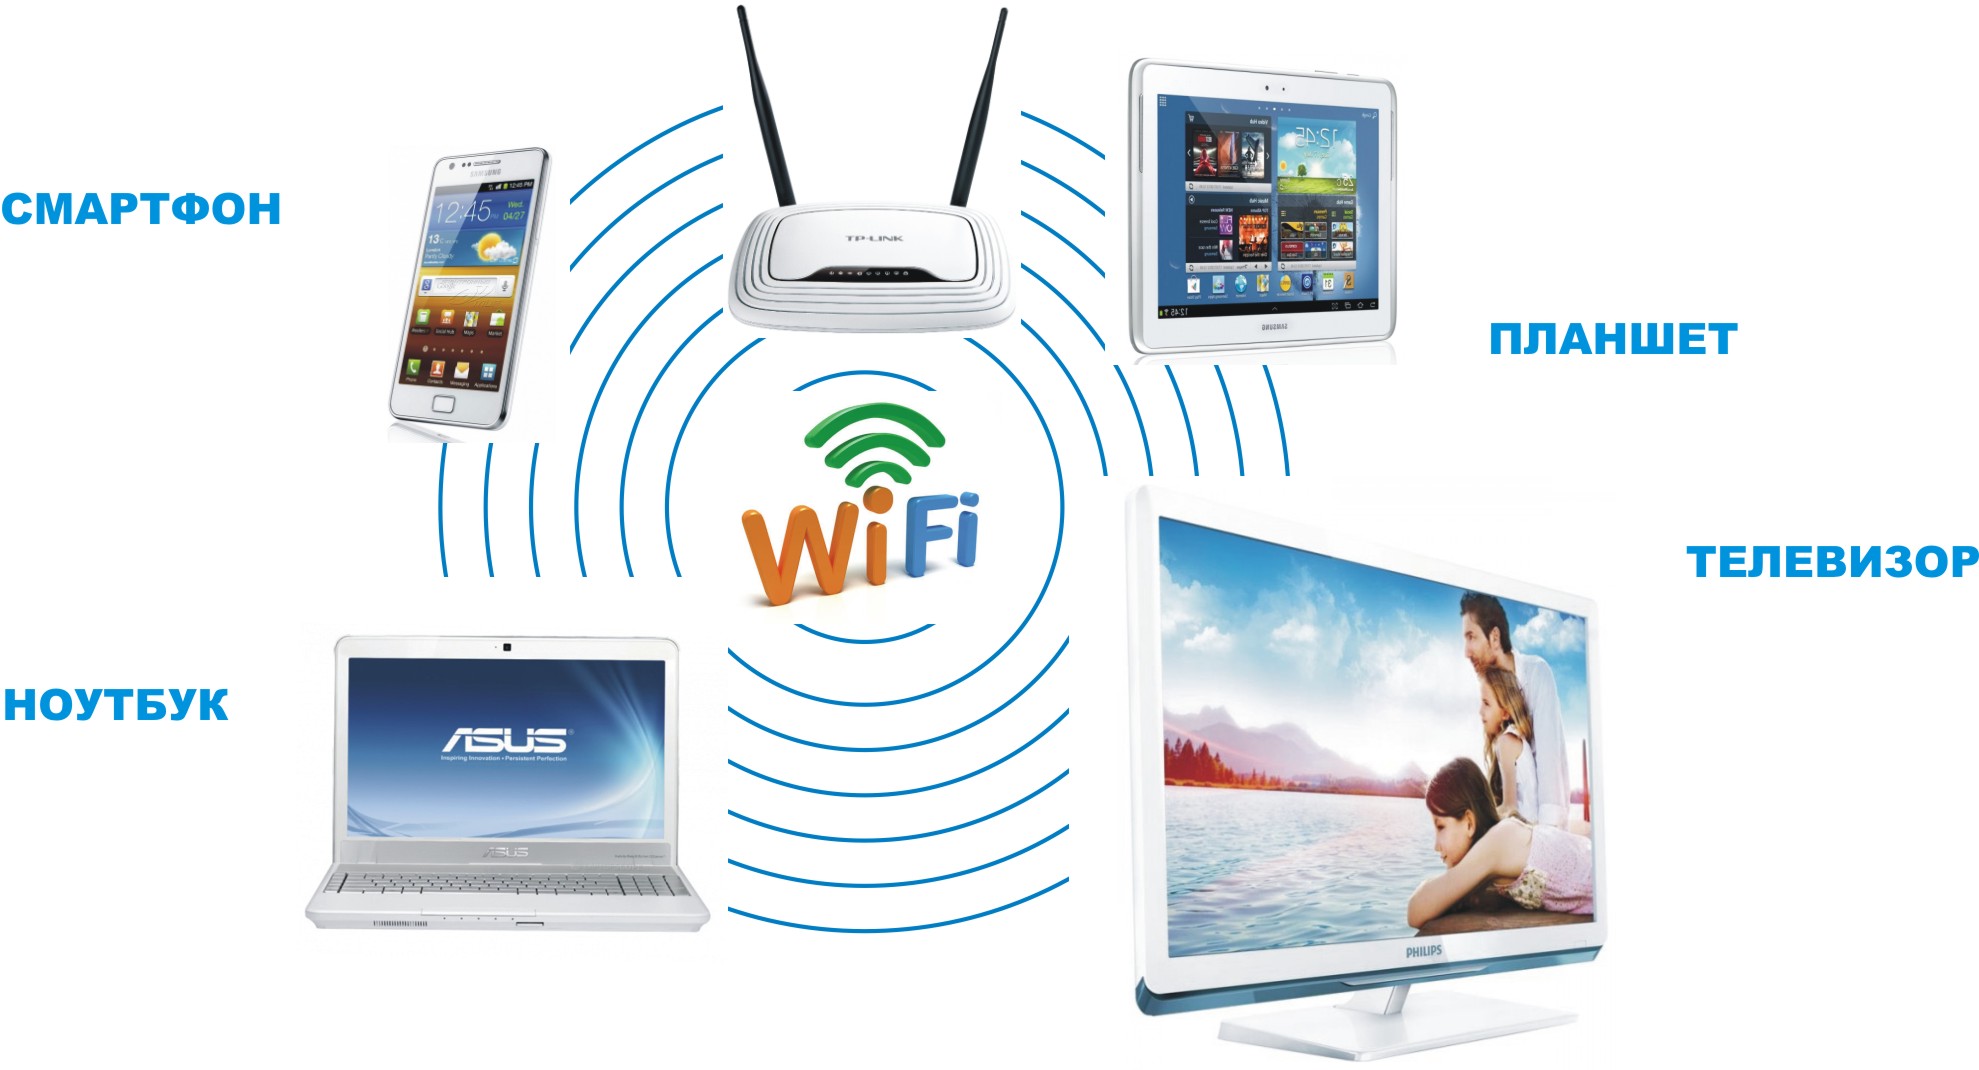 Вай фай требует авторизации. WIFI роутер UZTELECOM. Беспроводной интернет. Беспроводное соединение Wi-Fi. Телевизор беспроводная интернет.